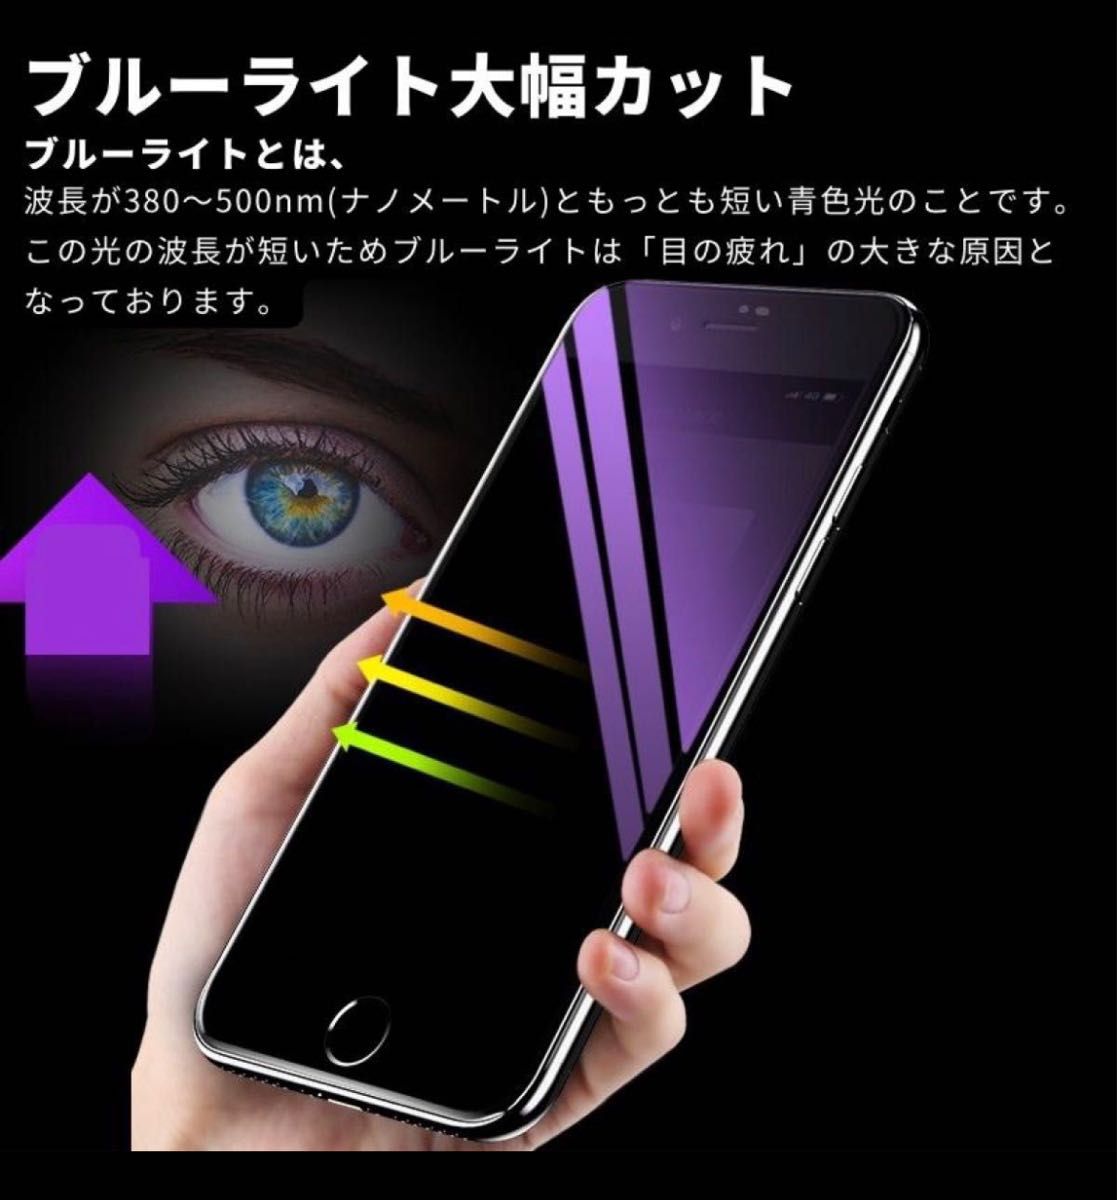 【iPhone12】ブルーライト大幅カット高品質液晶ガラスフィルム+iPhoneカメラレンズ保護カバー 各1枚セット